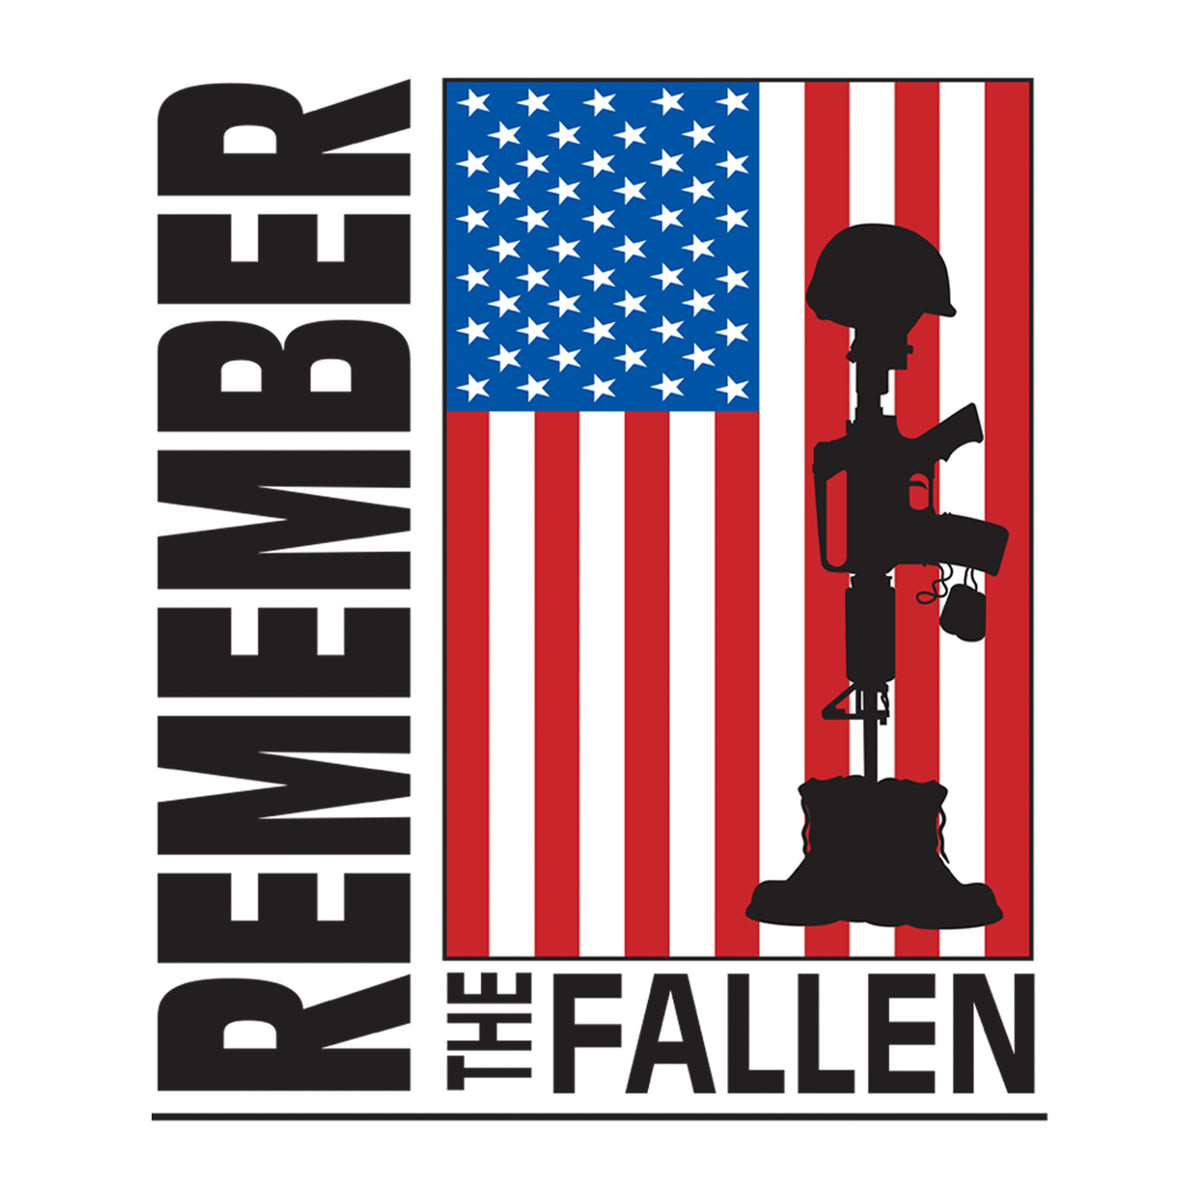 Remember the Fallen T-Shirt